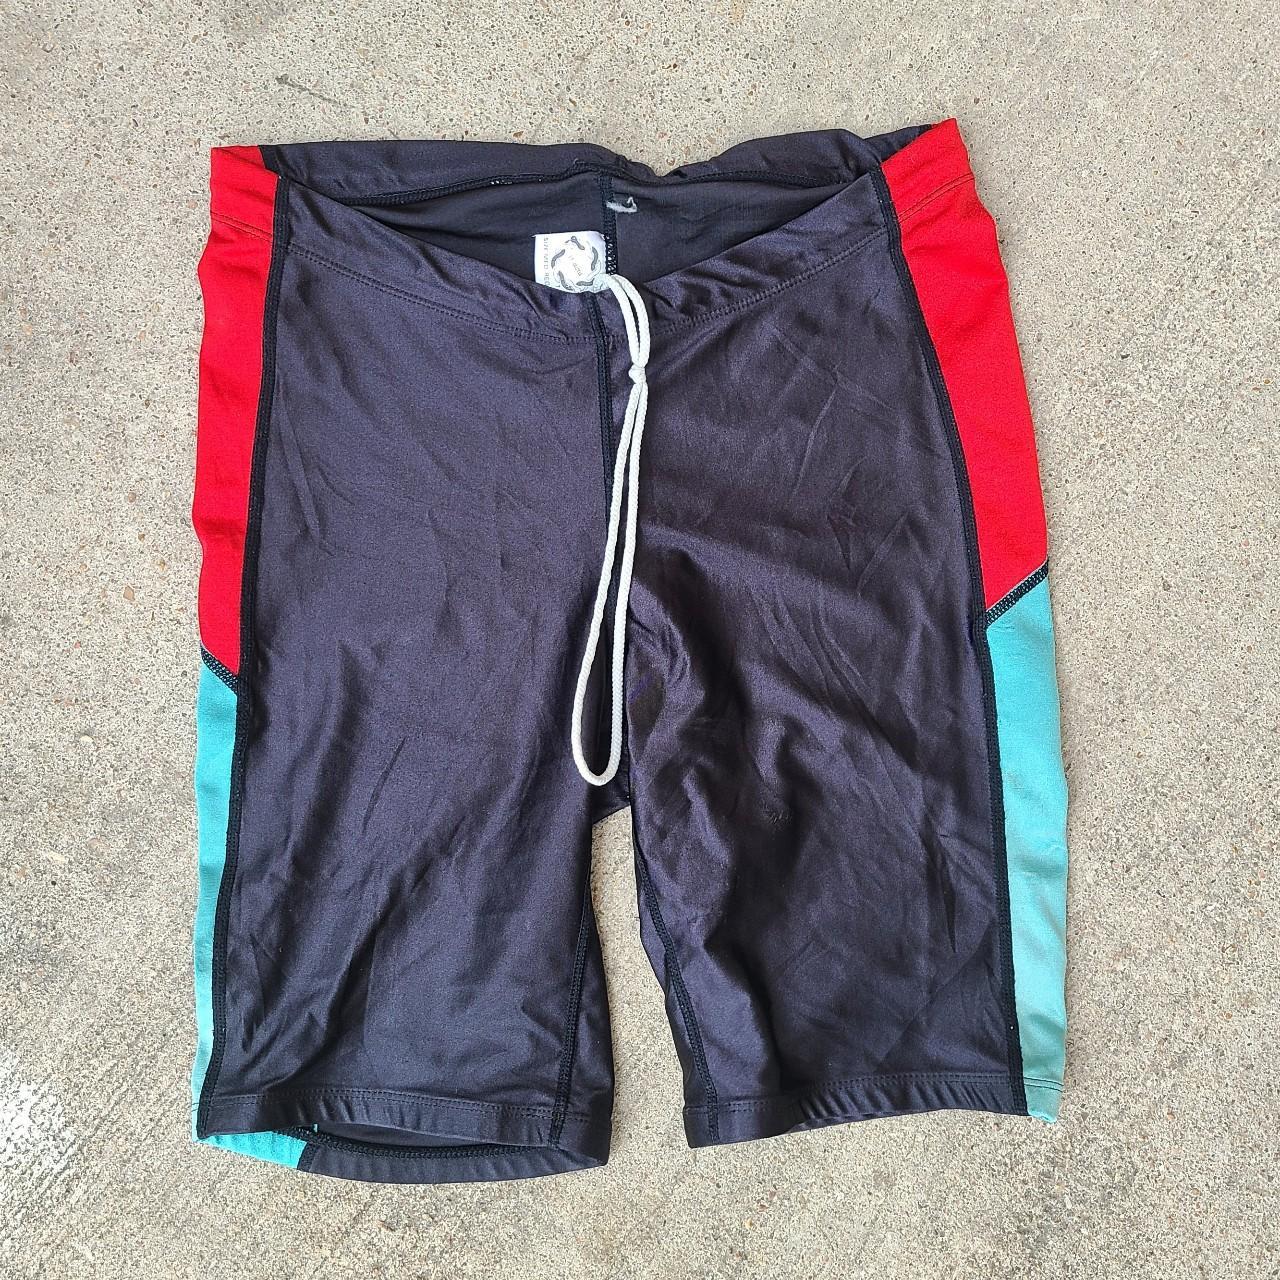 Vintage 80s spandex workout shorts sz M - Depop